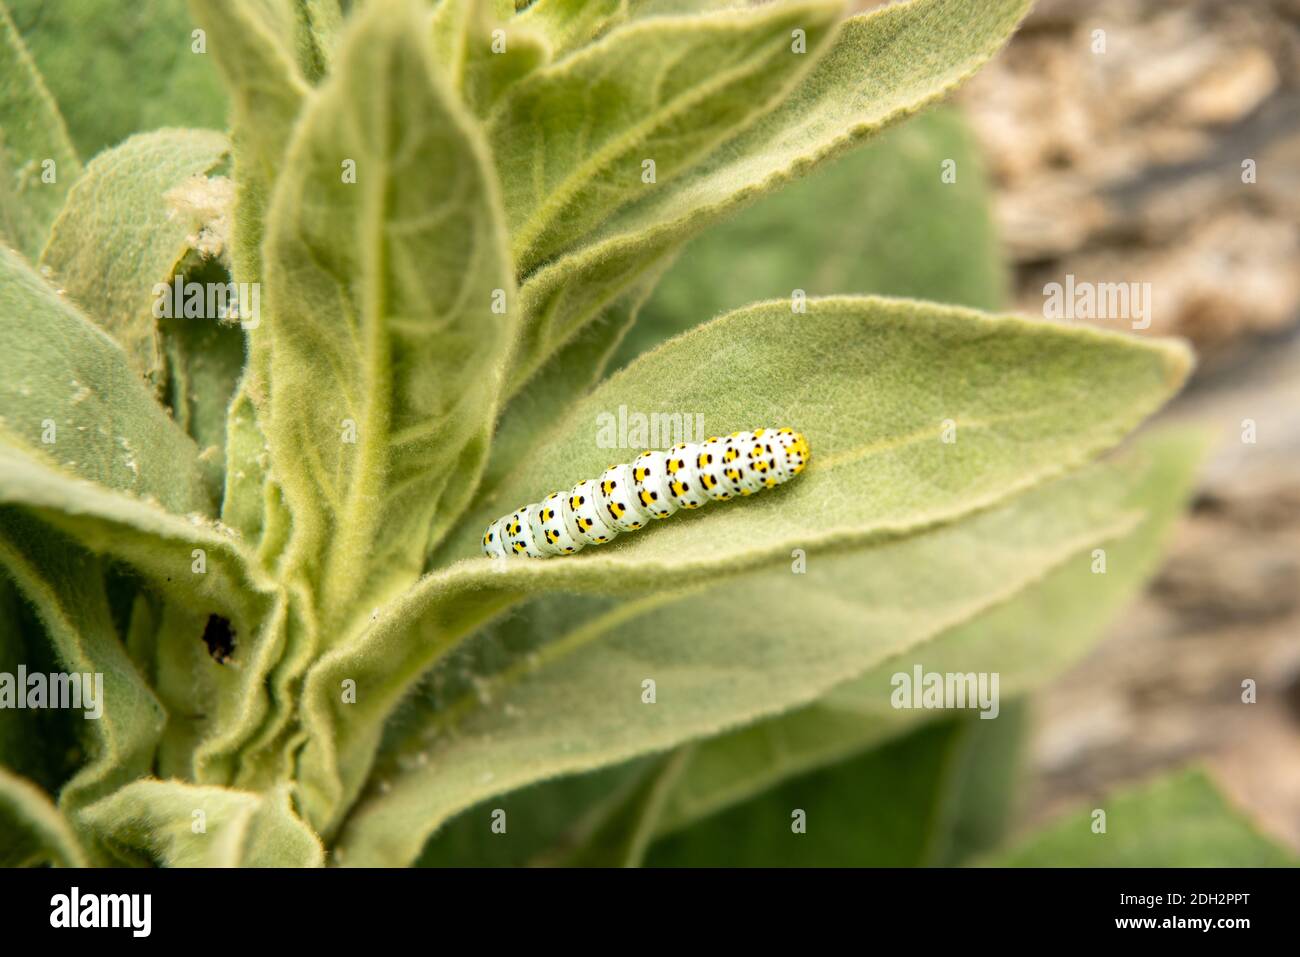 Brazunwurz monaco caterpillar Foto Stock